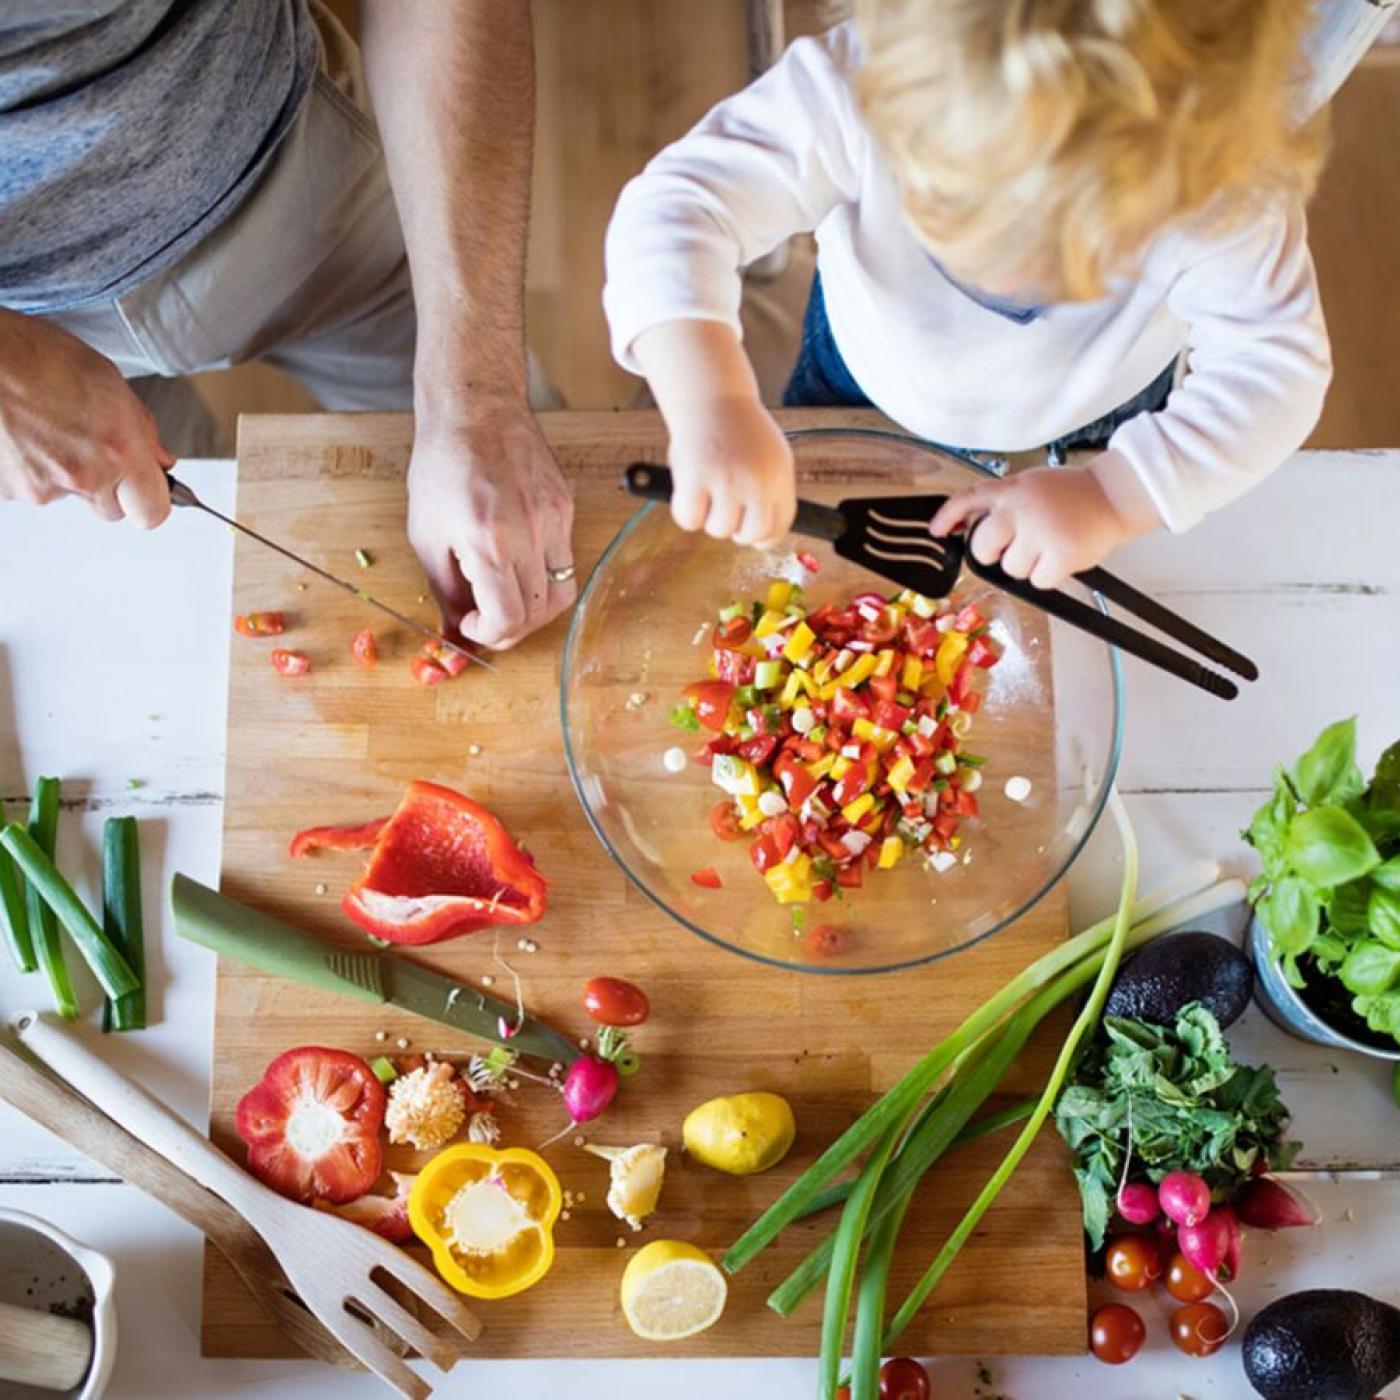 Le Journal des Bonnes Nouvelles : Comment faire aimer les légumes à vos enfants ?